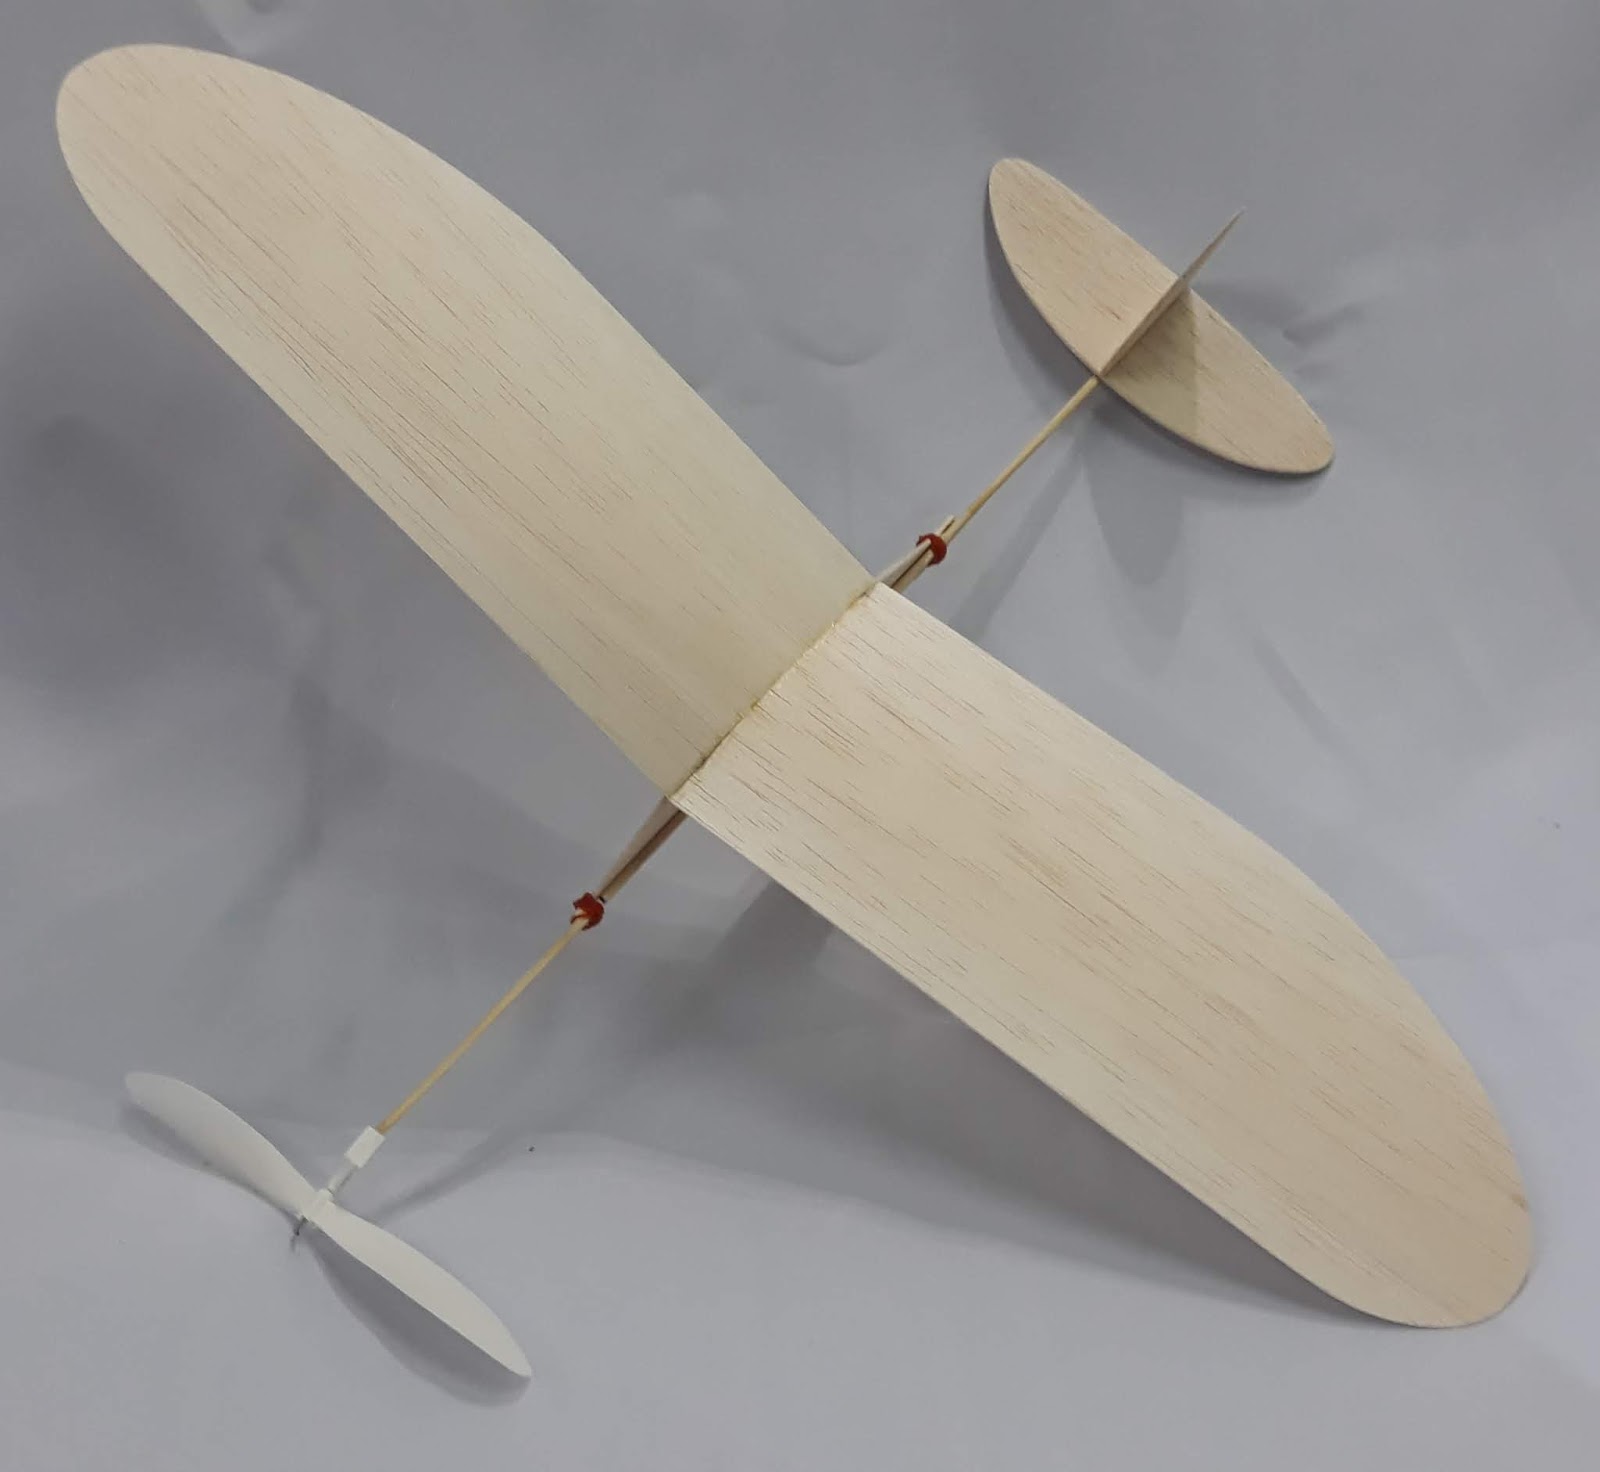 แนะนำอุปกรณ์การสร้าง เครื่องบินบังคับวิทยุ: งานสร้างเครื่องบินยาง ตอนที่ 1